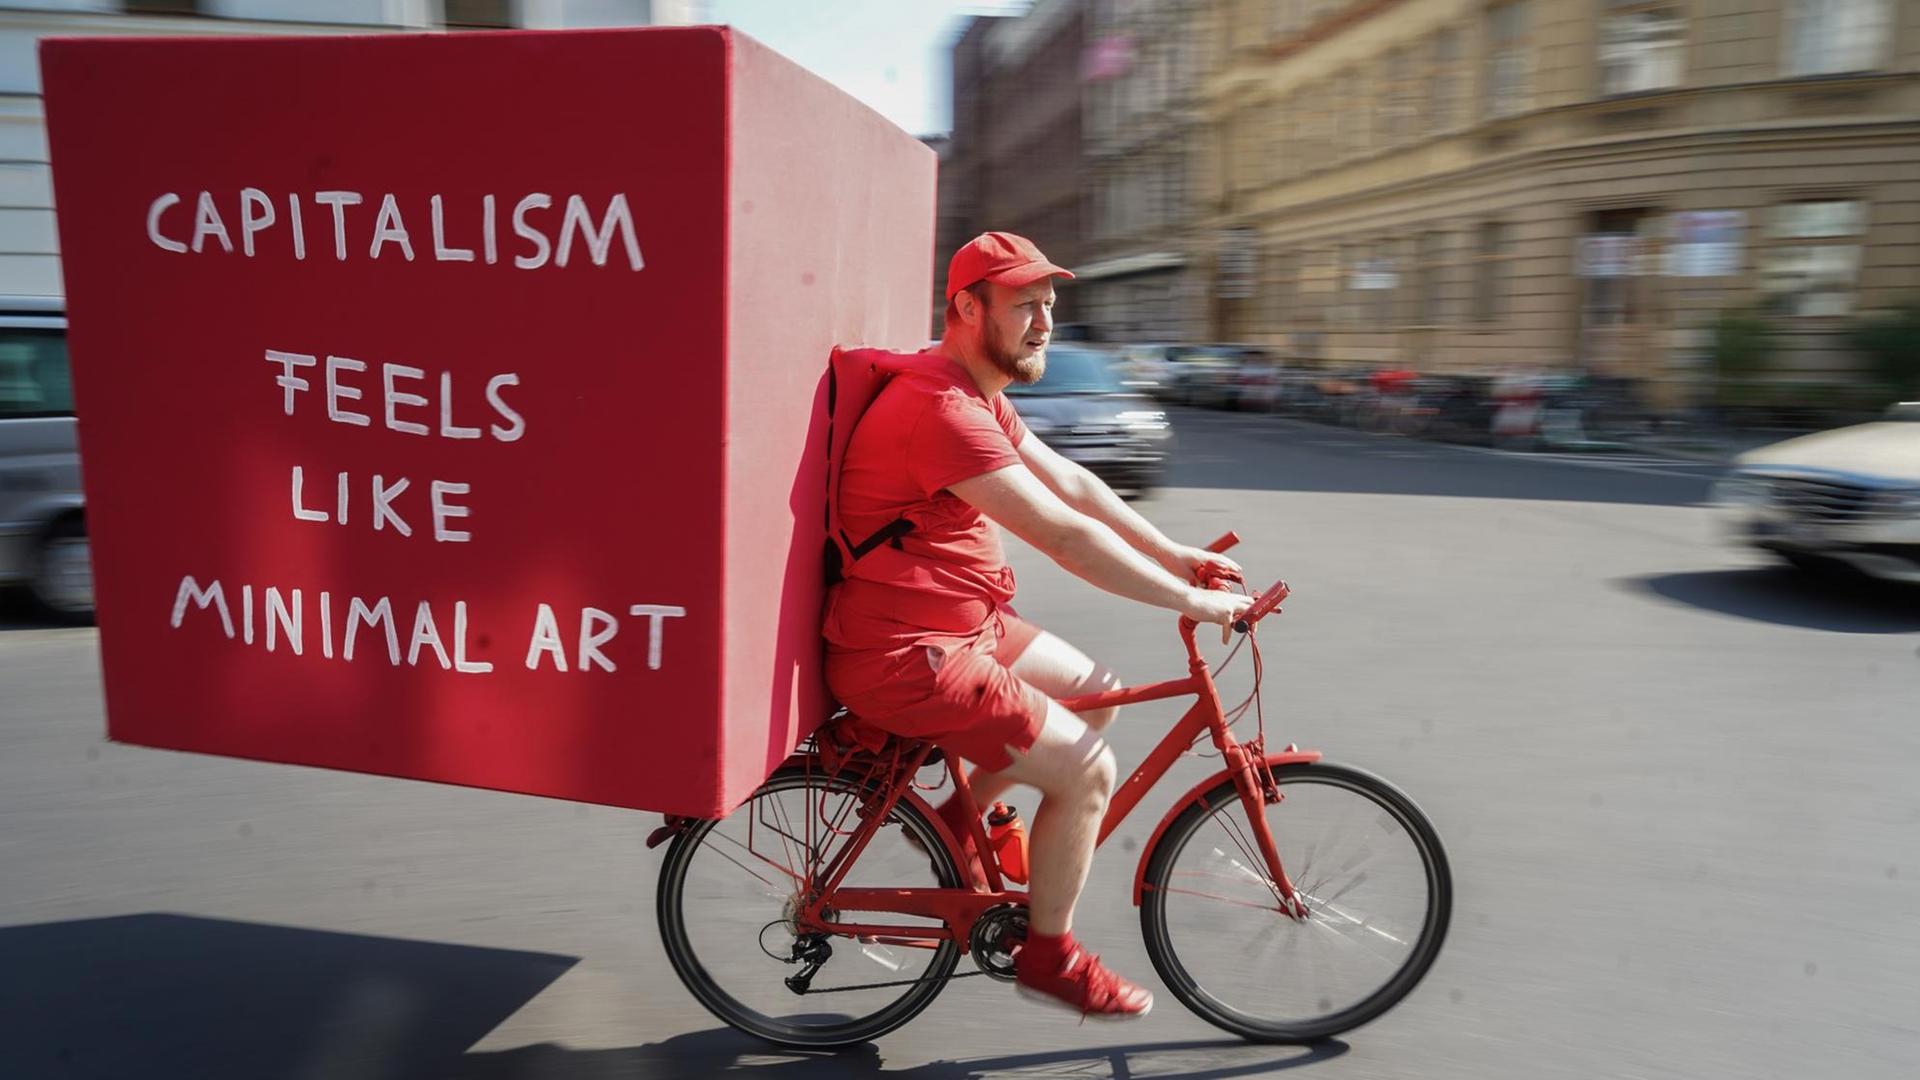 Im Rahmen der Berlin Art Week fährt der Künstler Daniel Chluba in roter Kleidung auf einem roten Fahrrad mit einer großen roten Kiste auf dem Rücken durch die Stadt.